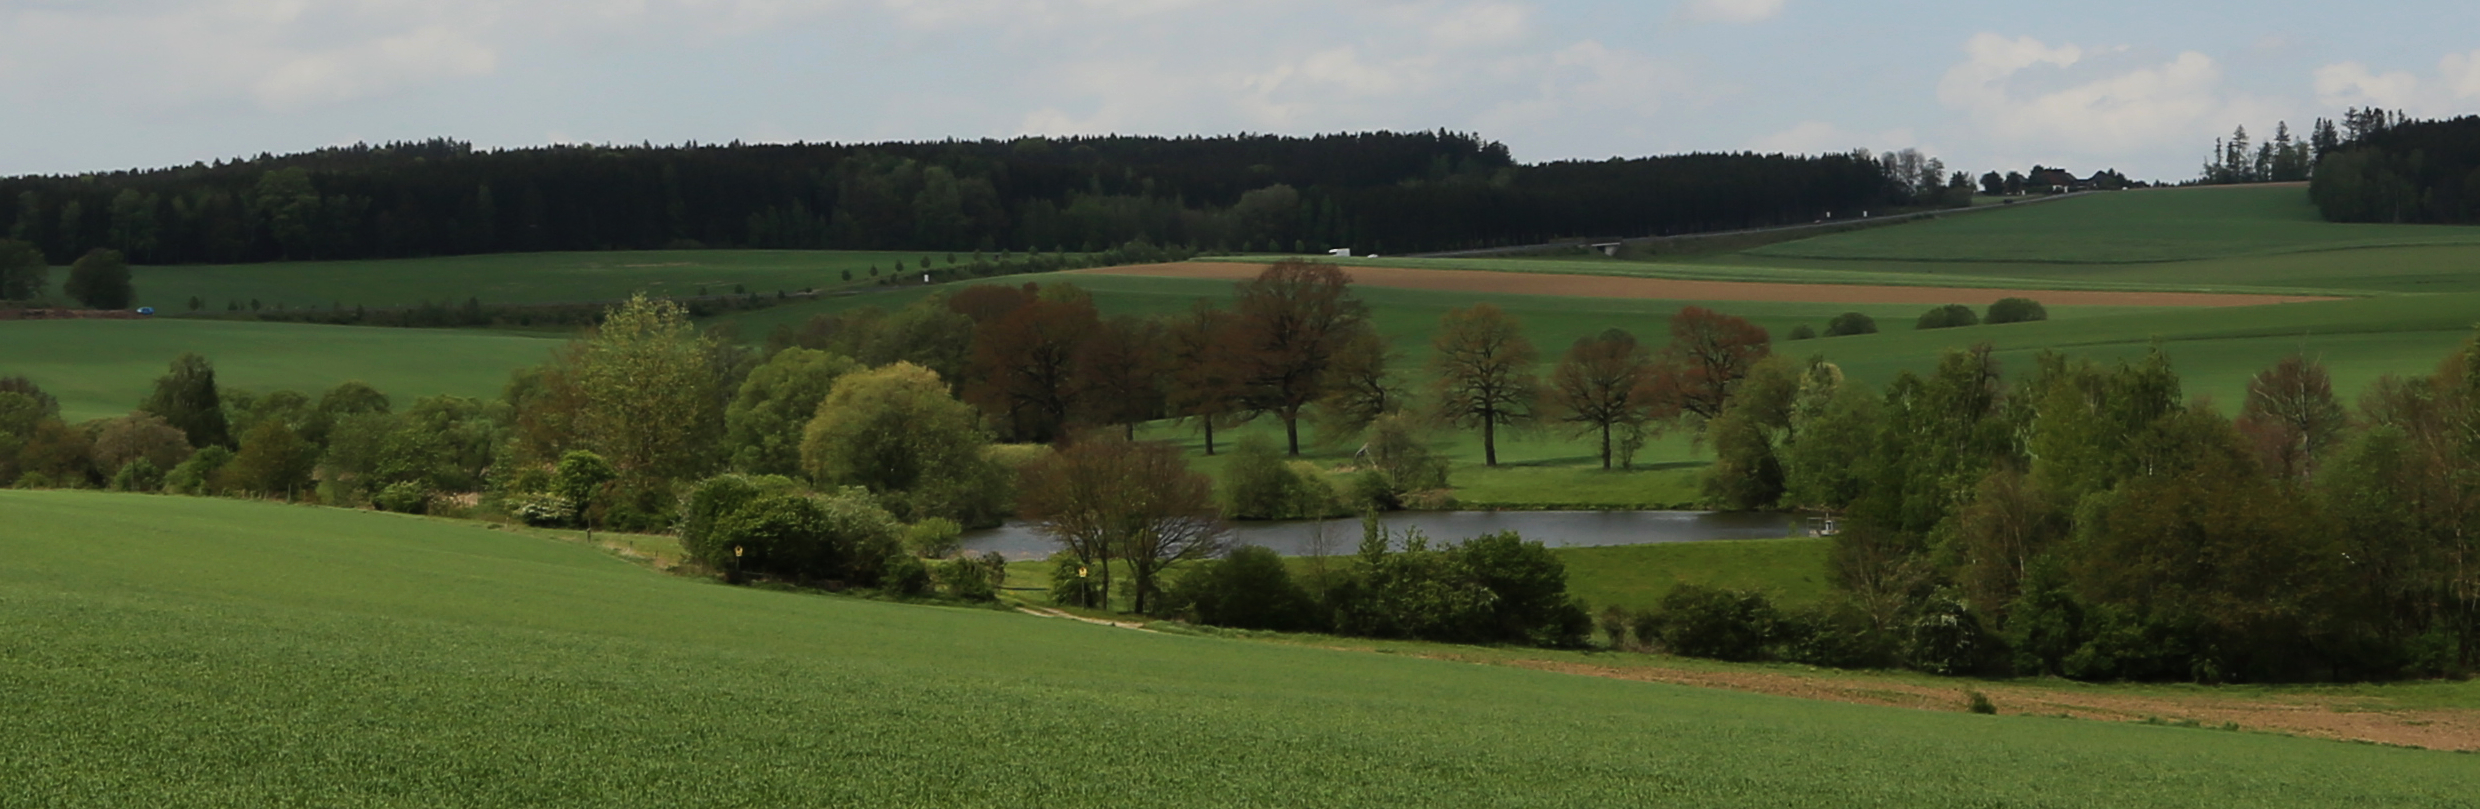 Landschaftsbild mit Teich, Feldern und Bäumen